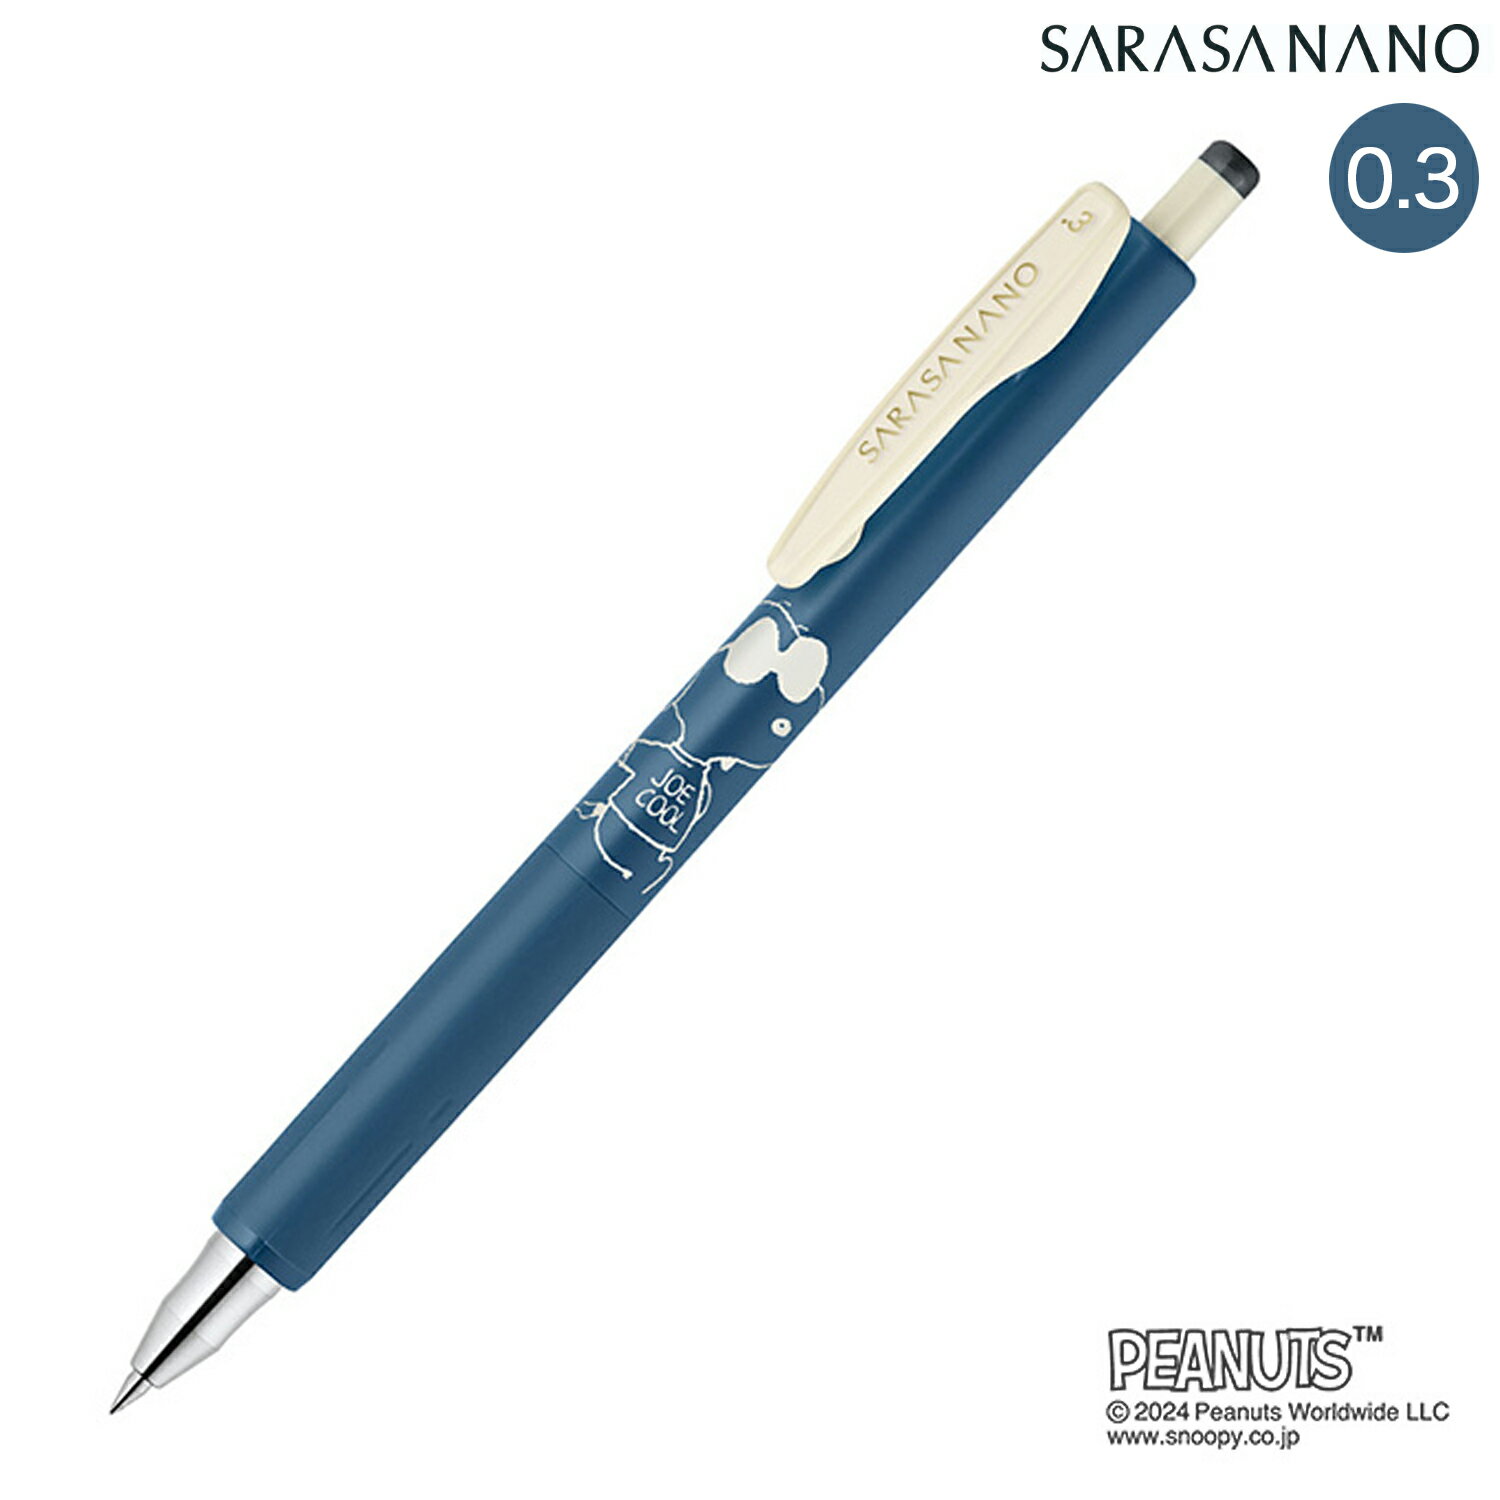 ゼブラ ZEBRA SARASA NANO サラサナノ スヌーピー 0.3mm ブルーグレー JJH72-SN-VBGR